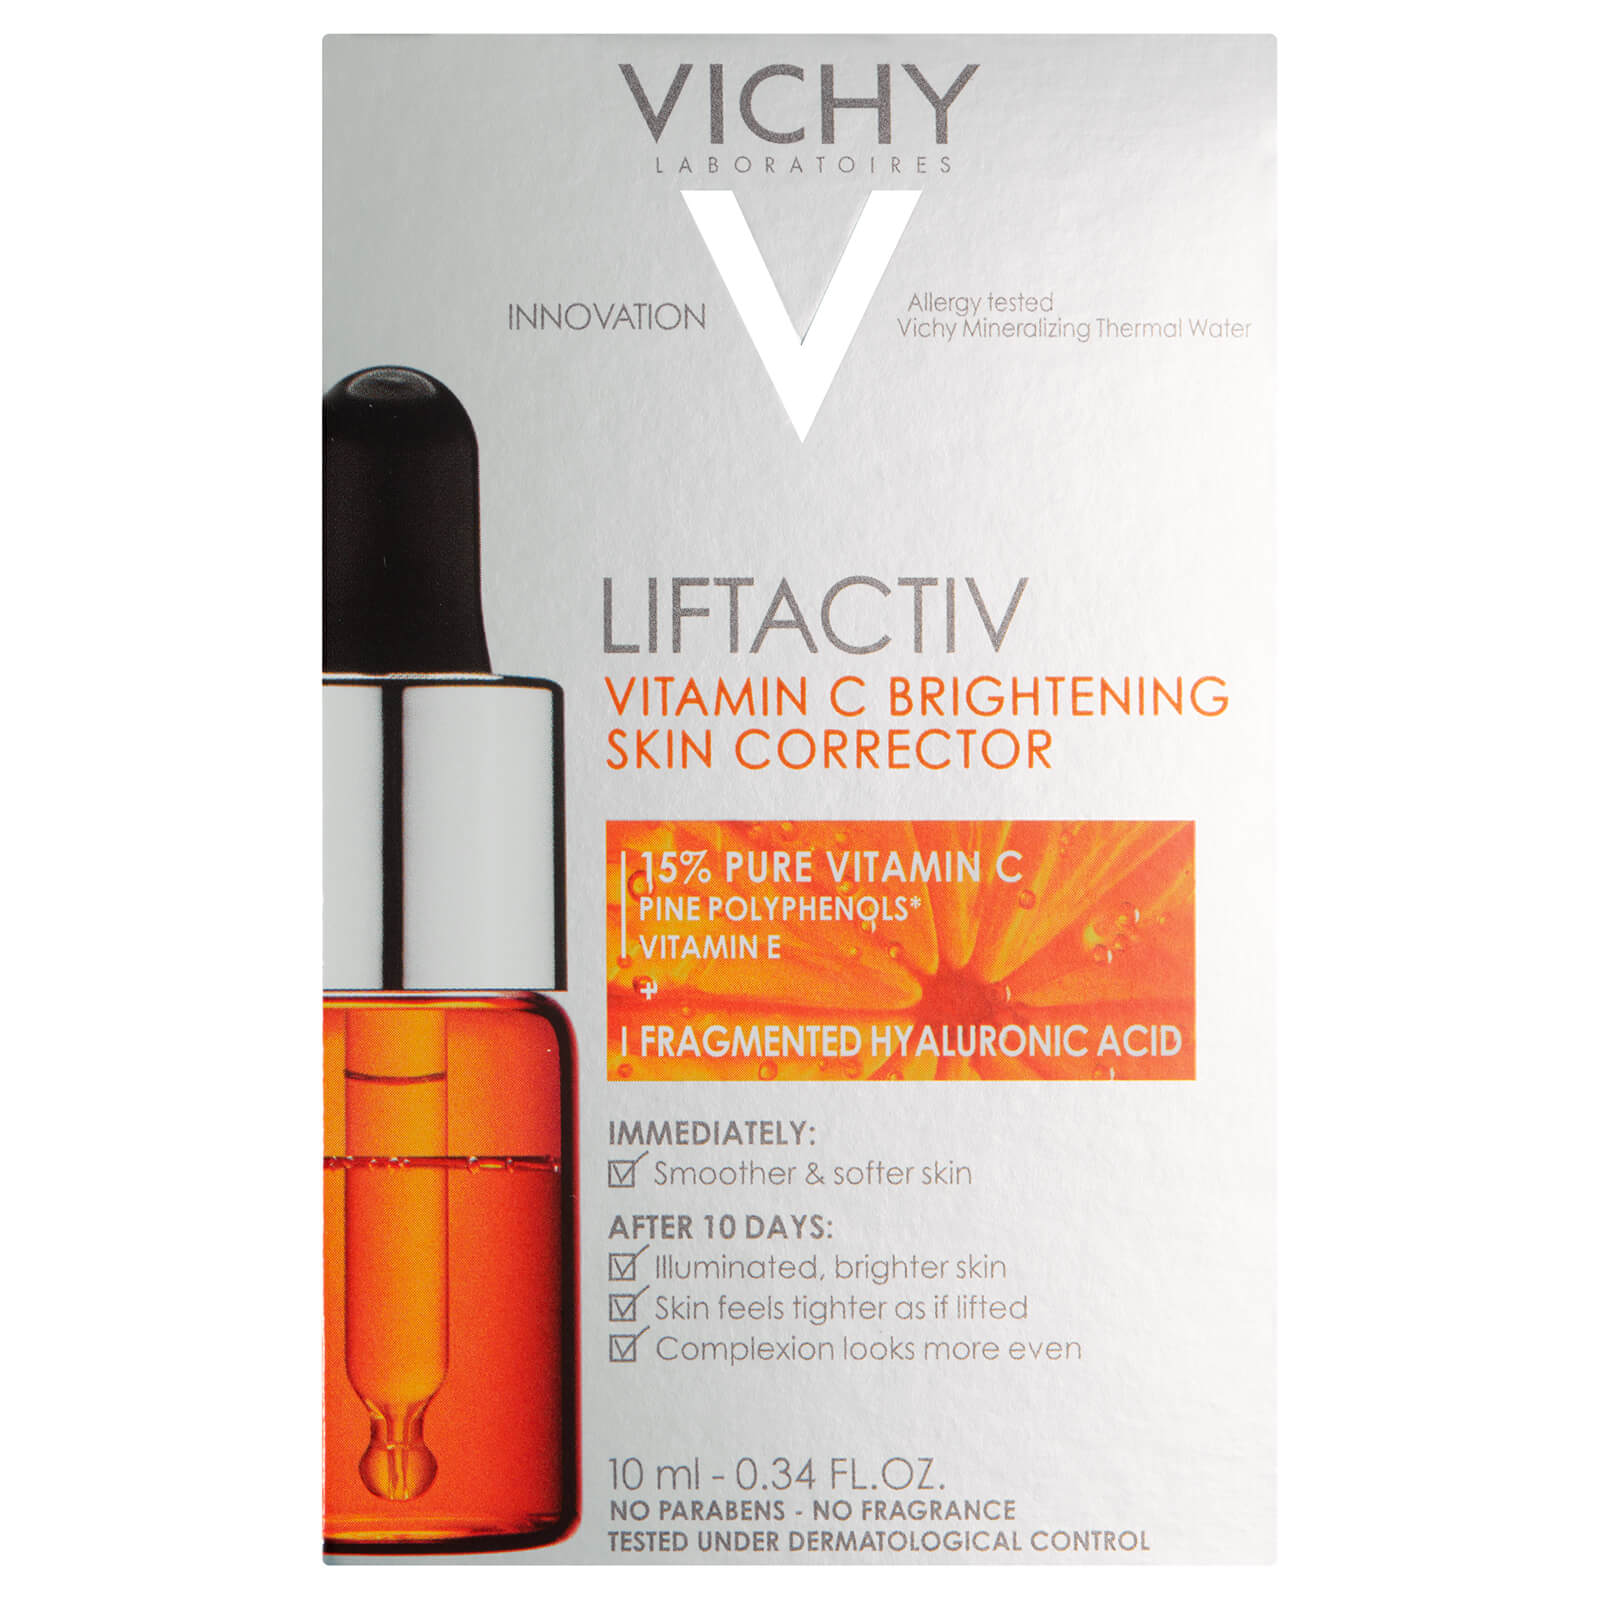 VICHY Liftactiv Vitamin C Skin Brightening Corrector 10ml